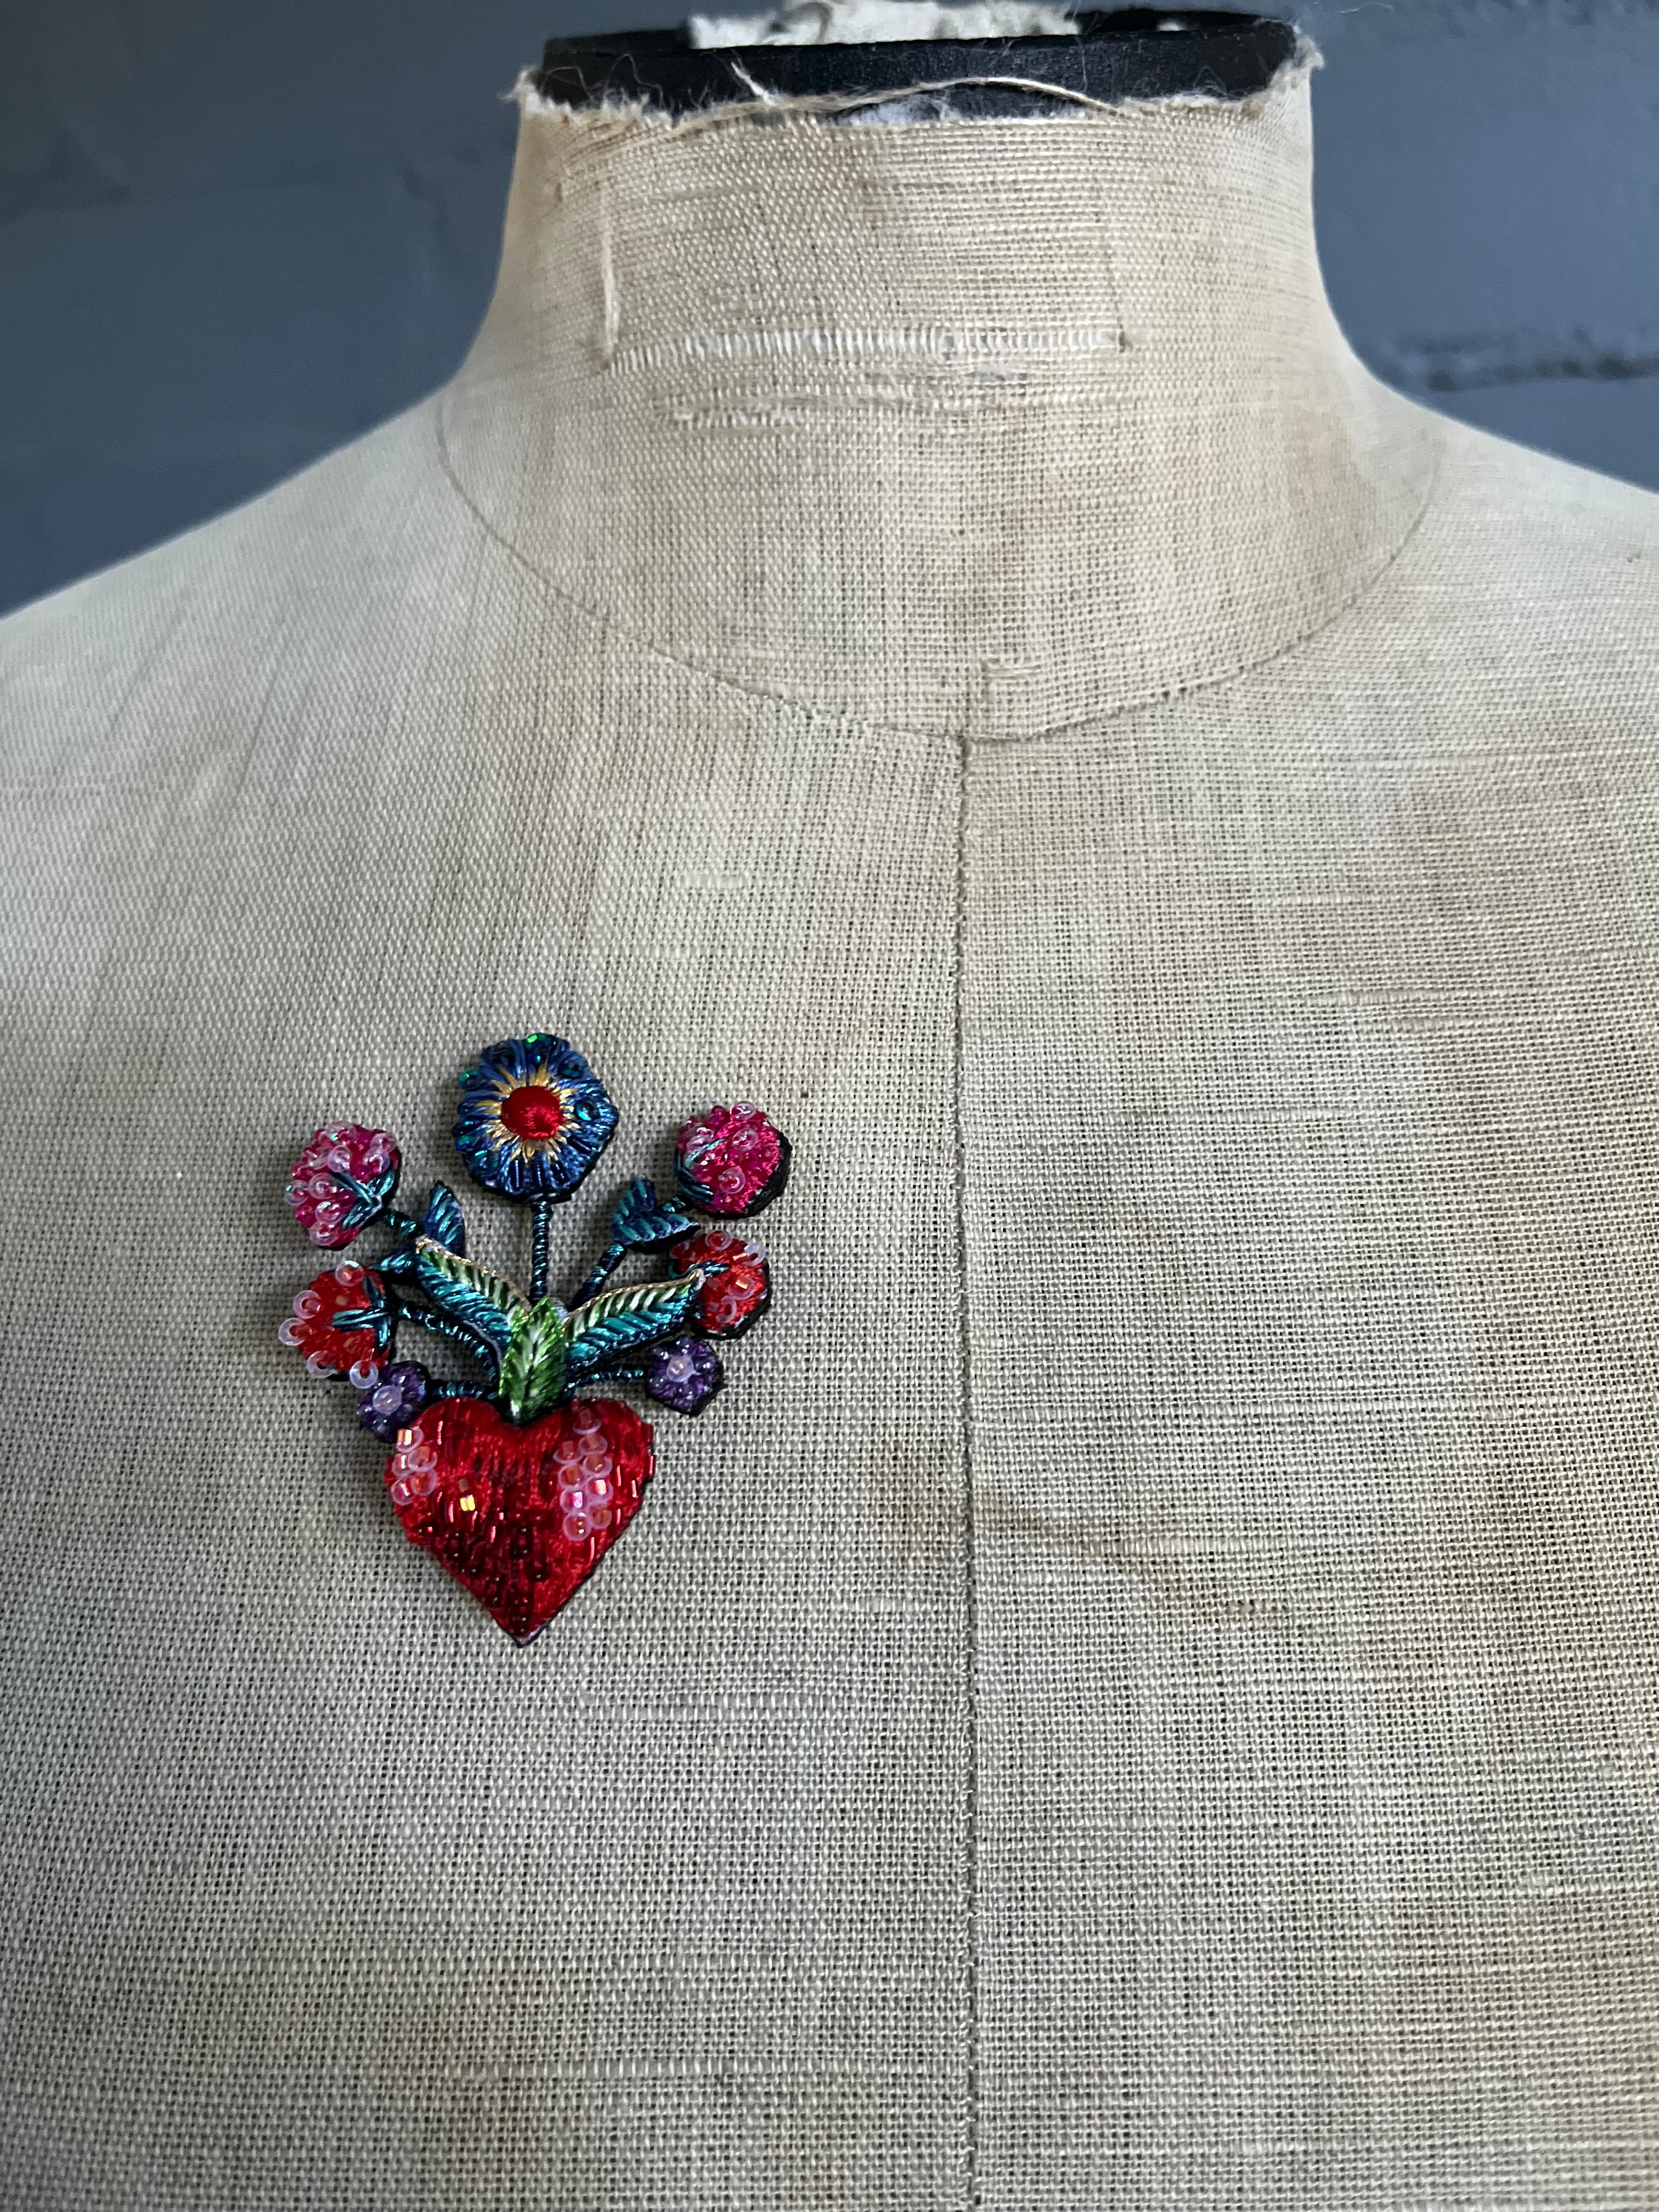 Handmade Brooch Pin - Frida's Flowers